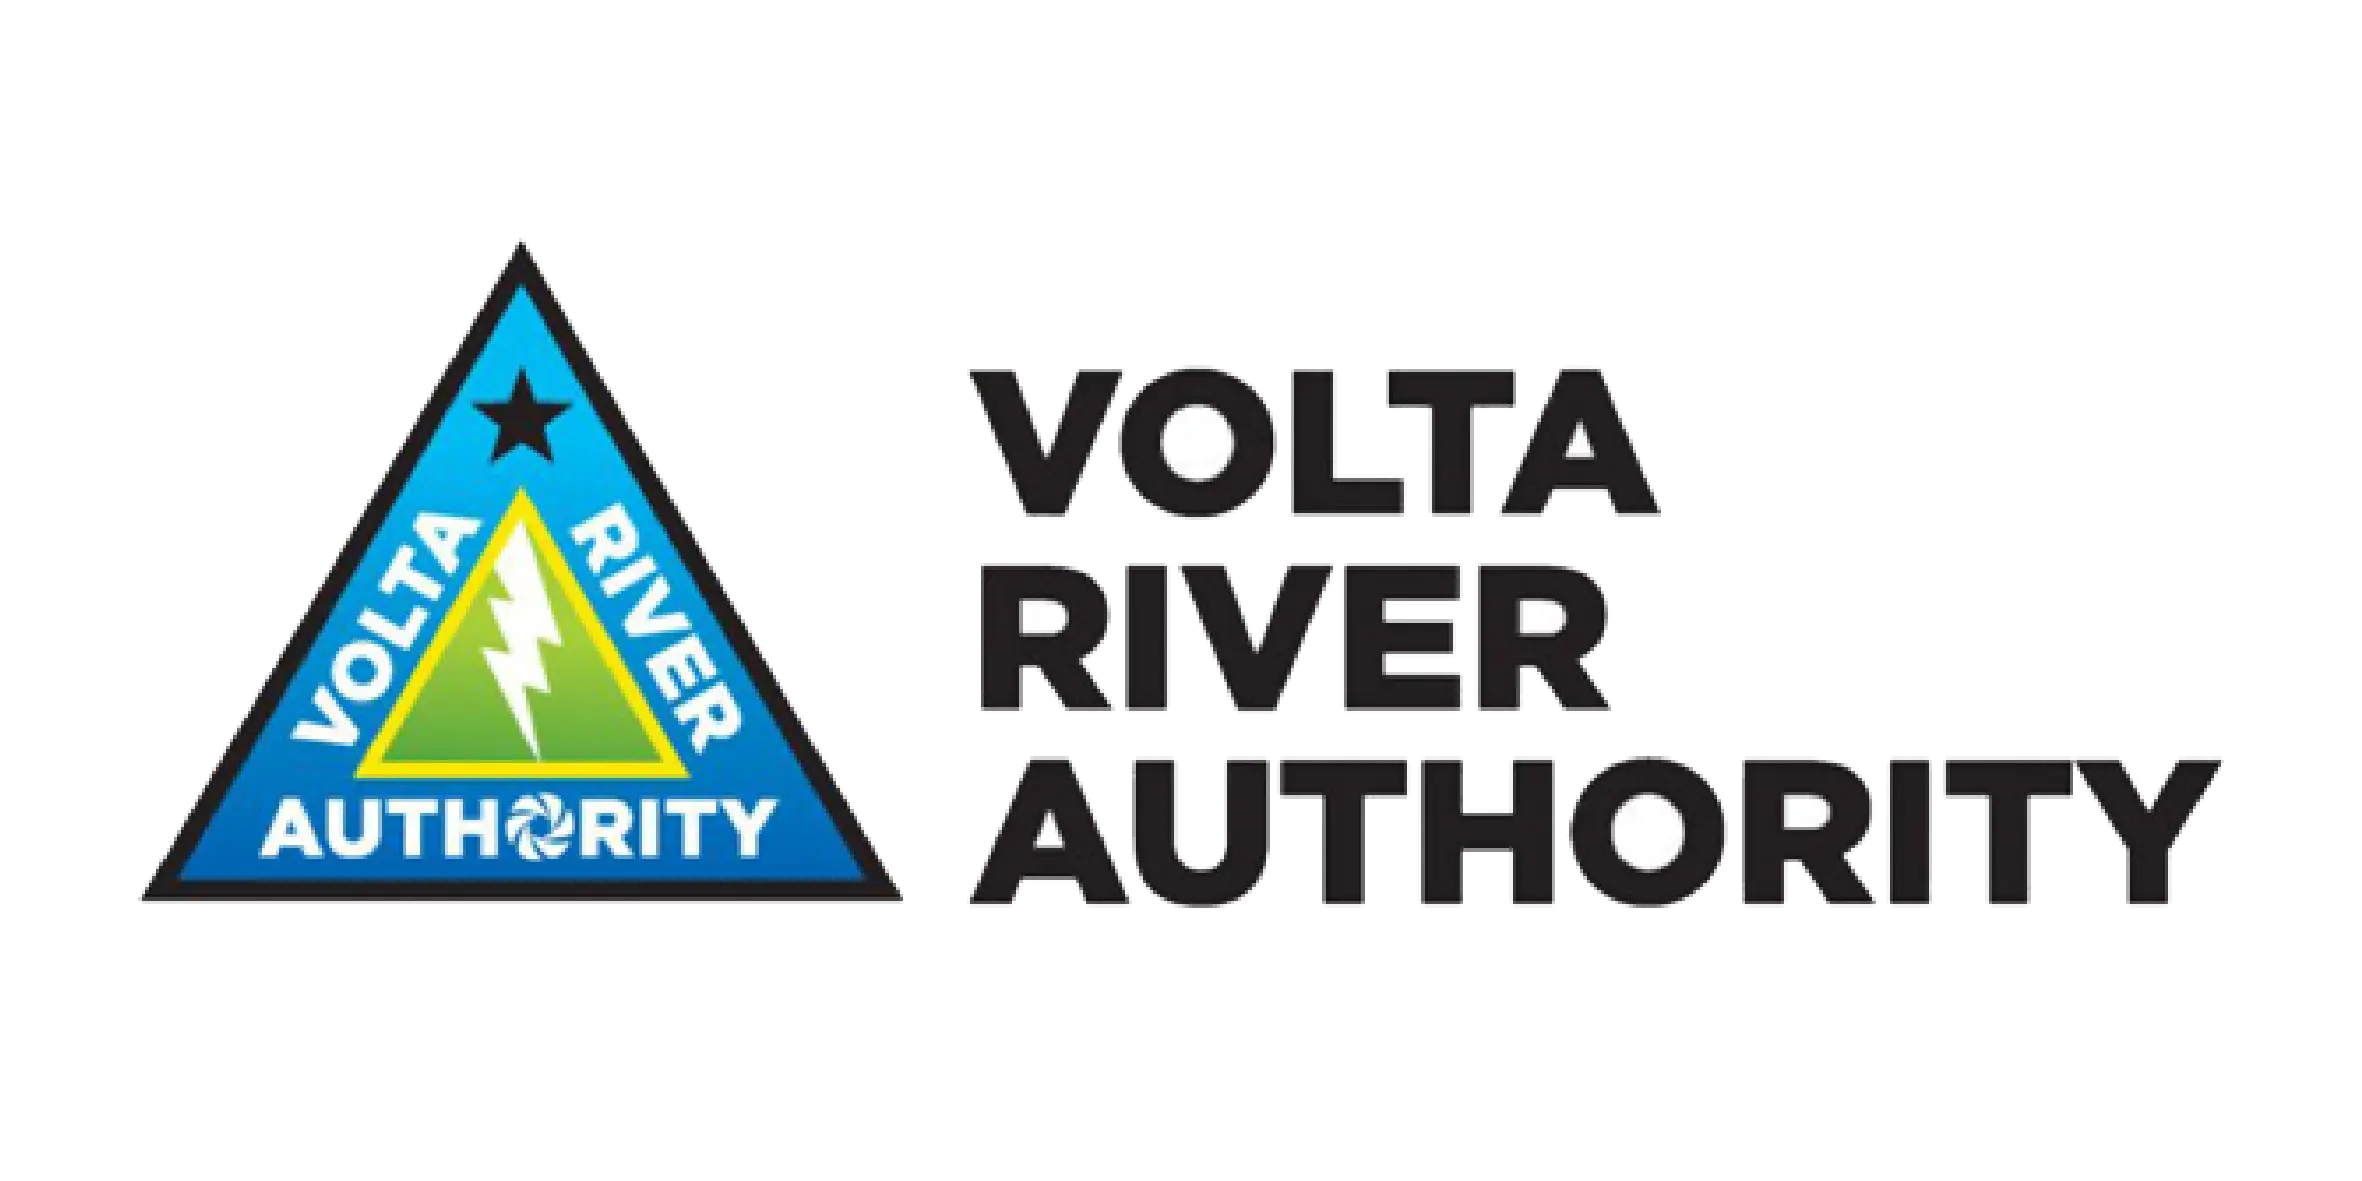 Volta river authority